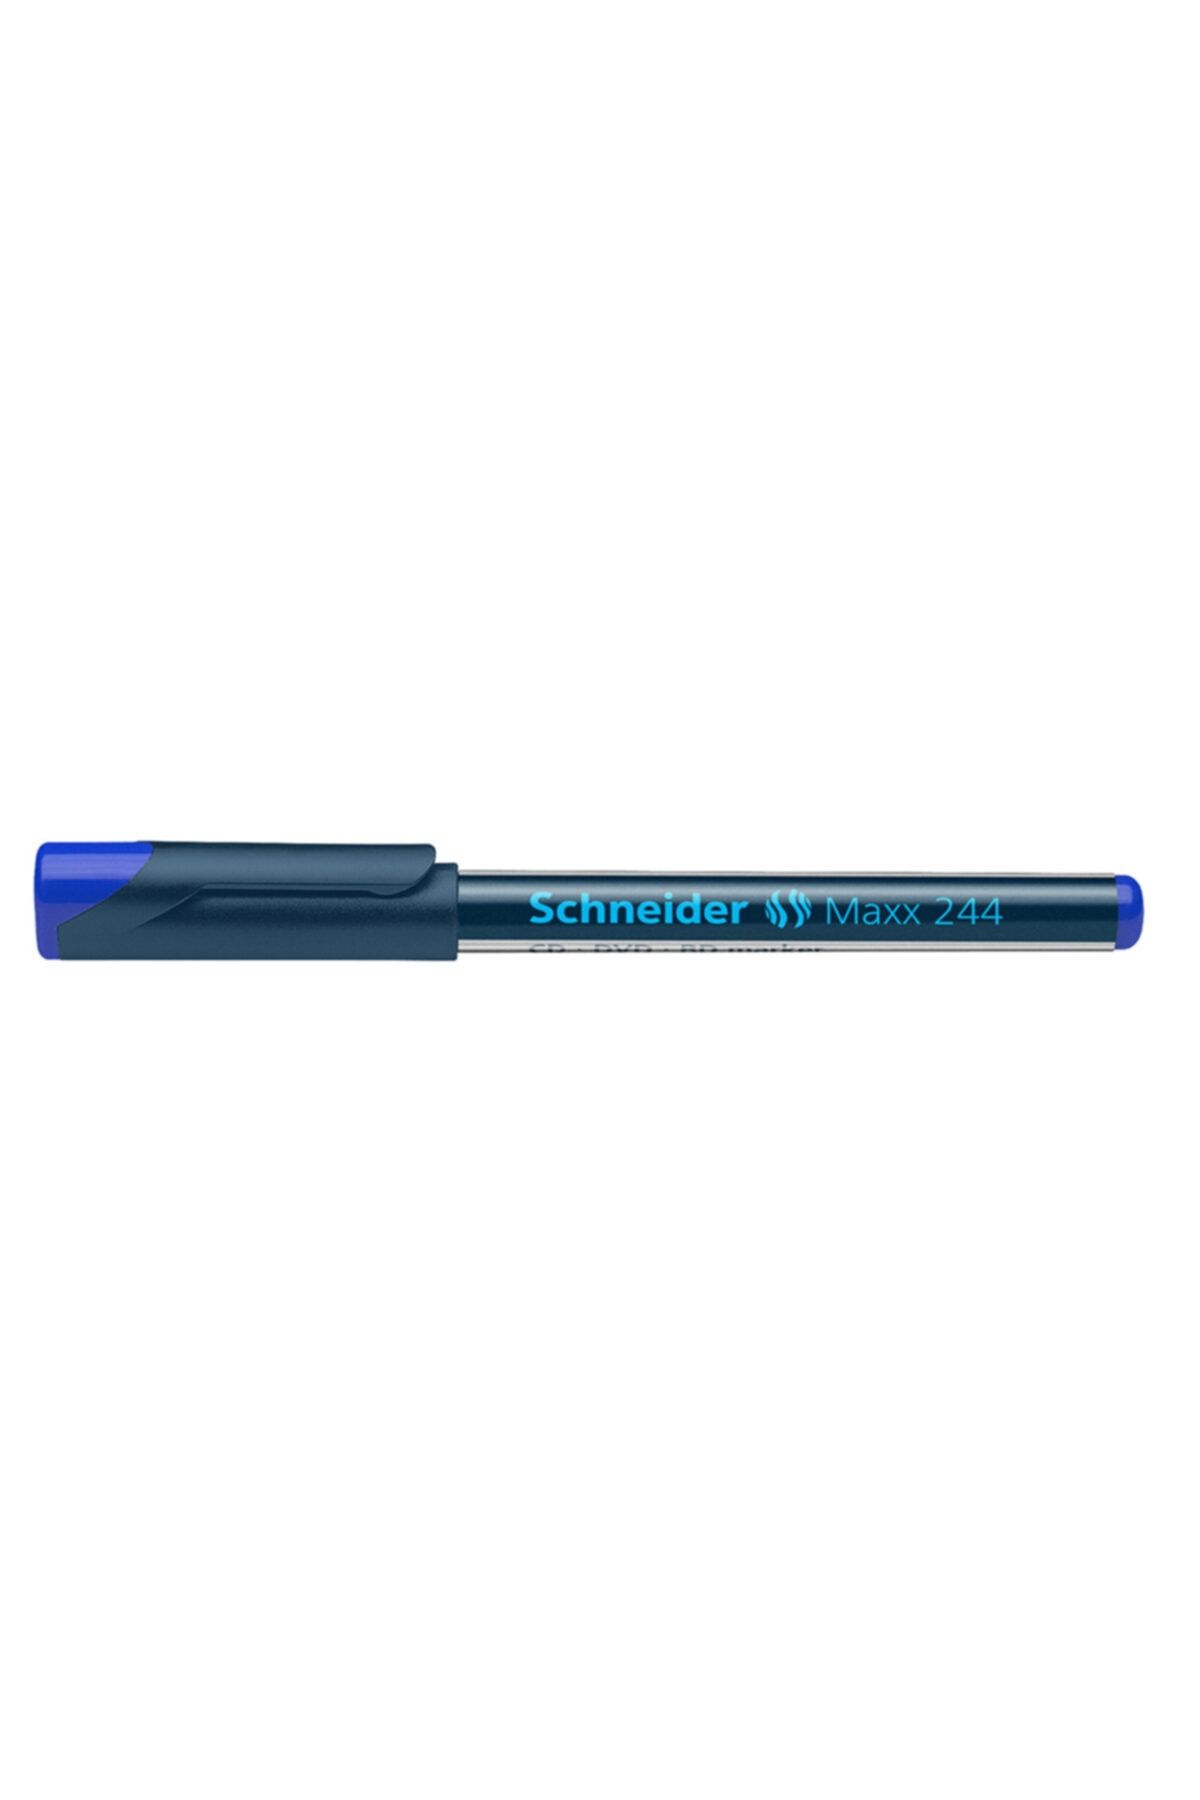 Schneider Schneıder 244 Maxx Cd/dvd Markörü Mavi Scm351